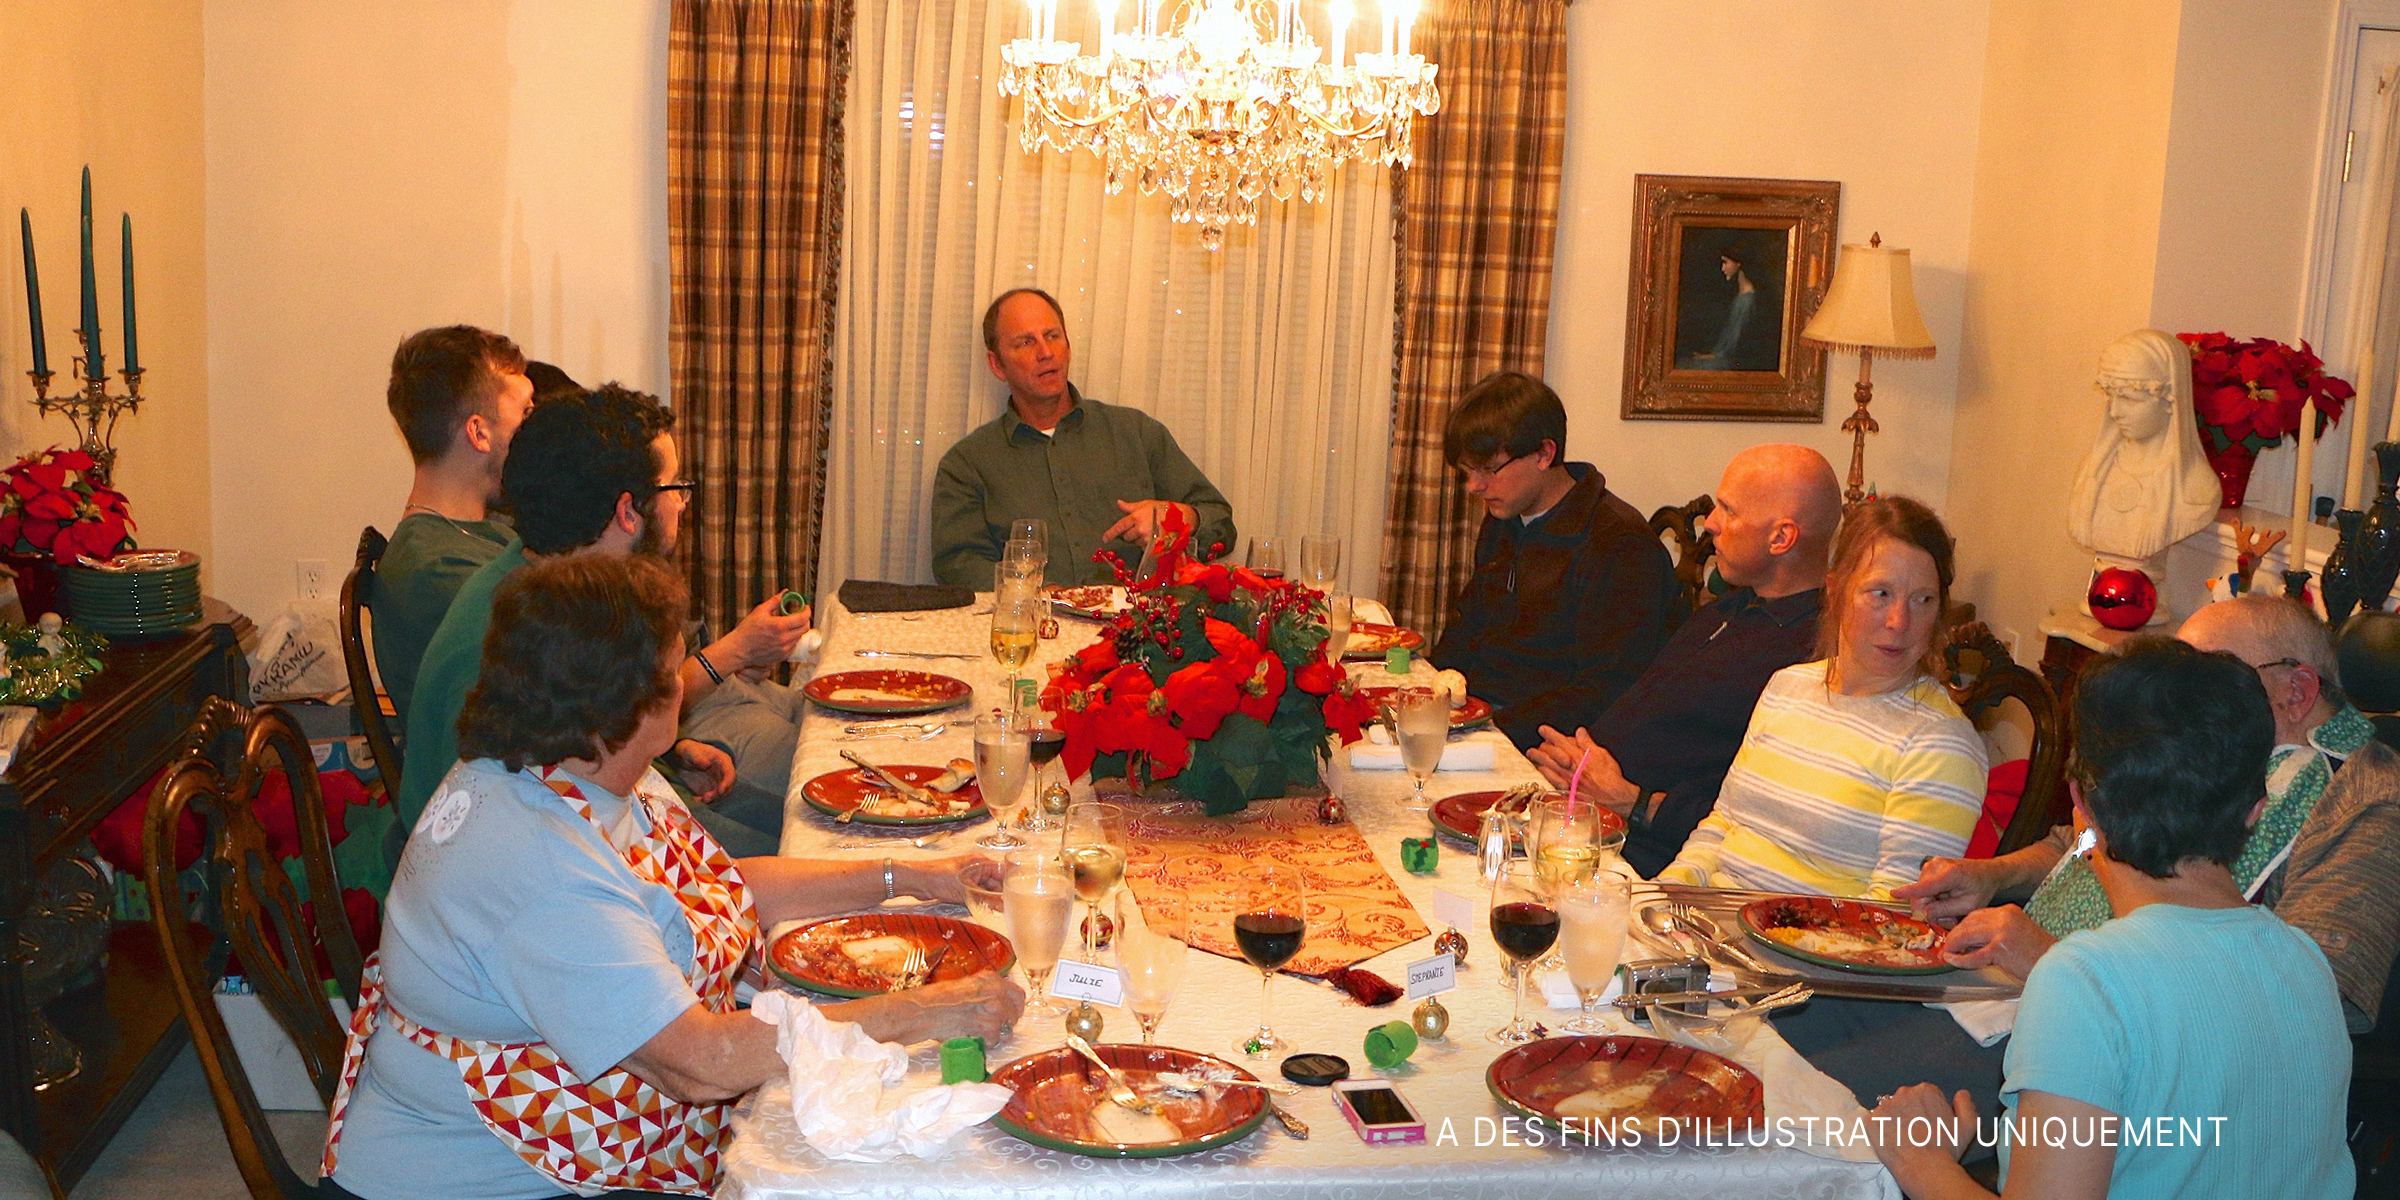 Une famille réunie pour le repas de Noël | flickr.com/oakleyoriginals/CC BY 2.0